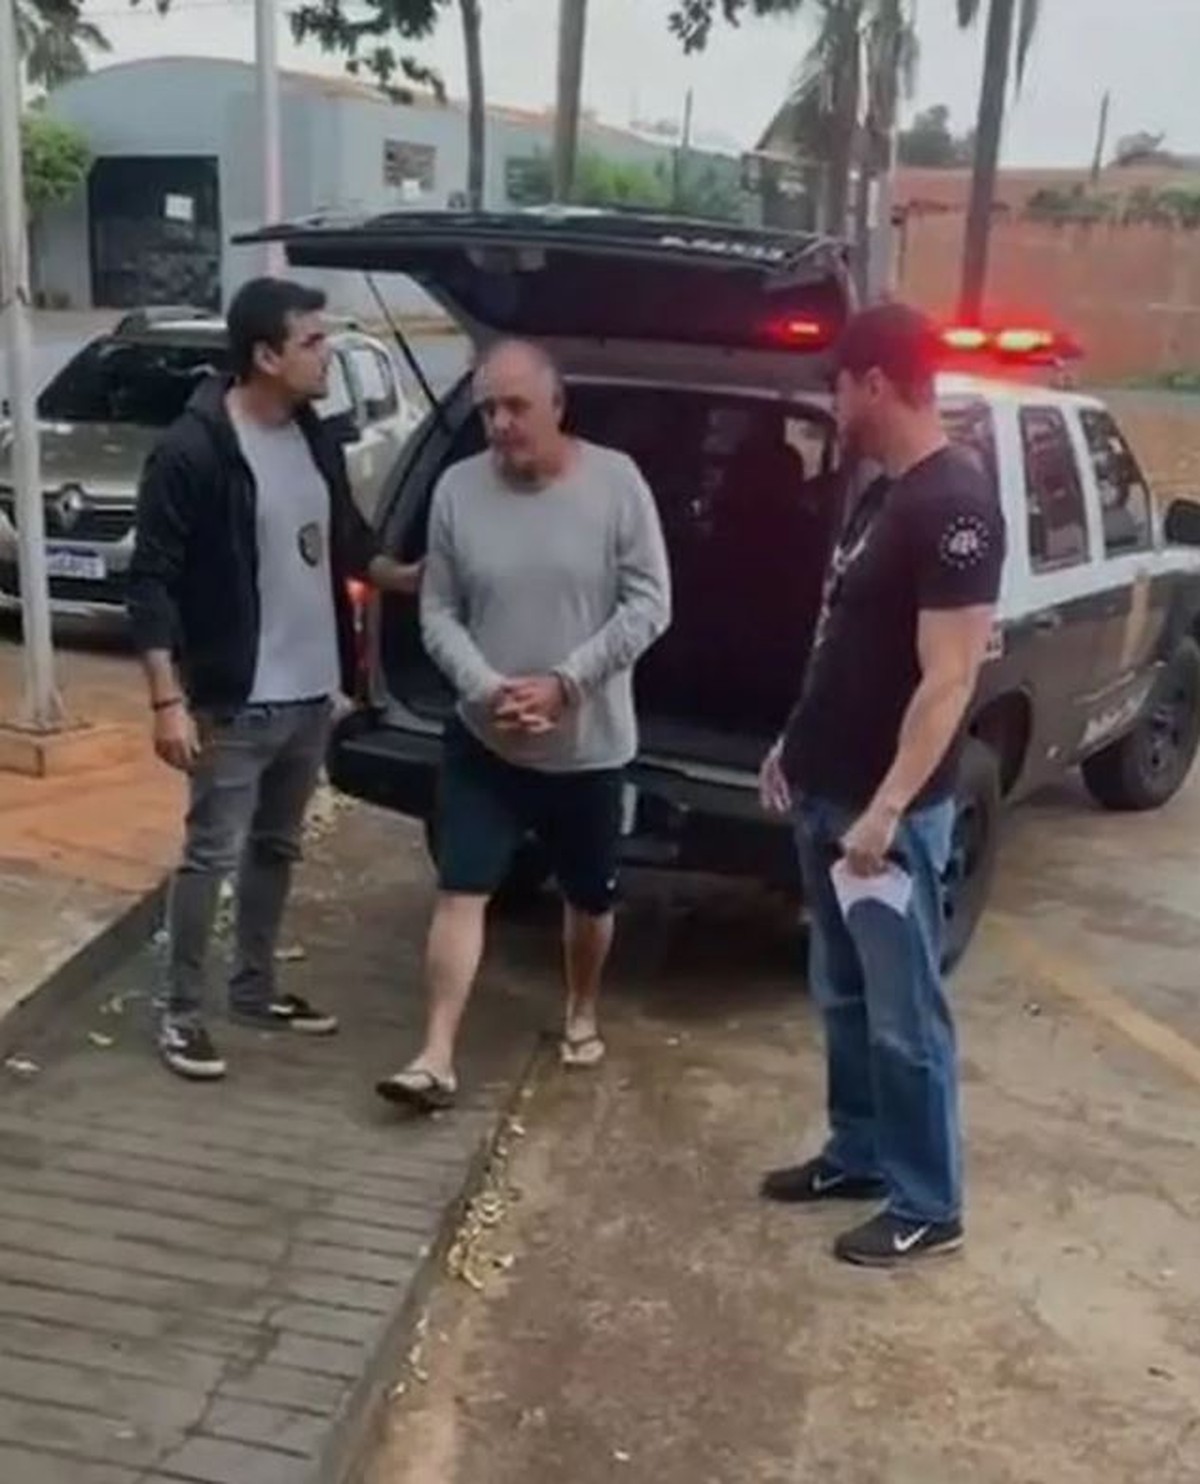 L’ancien conseiller et actuel greffier de Colina a été arrêté, soupçonné d’avoir abusé sexuellement de mineurs |  Ribeirao Preto et Franca